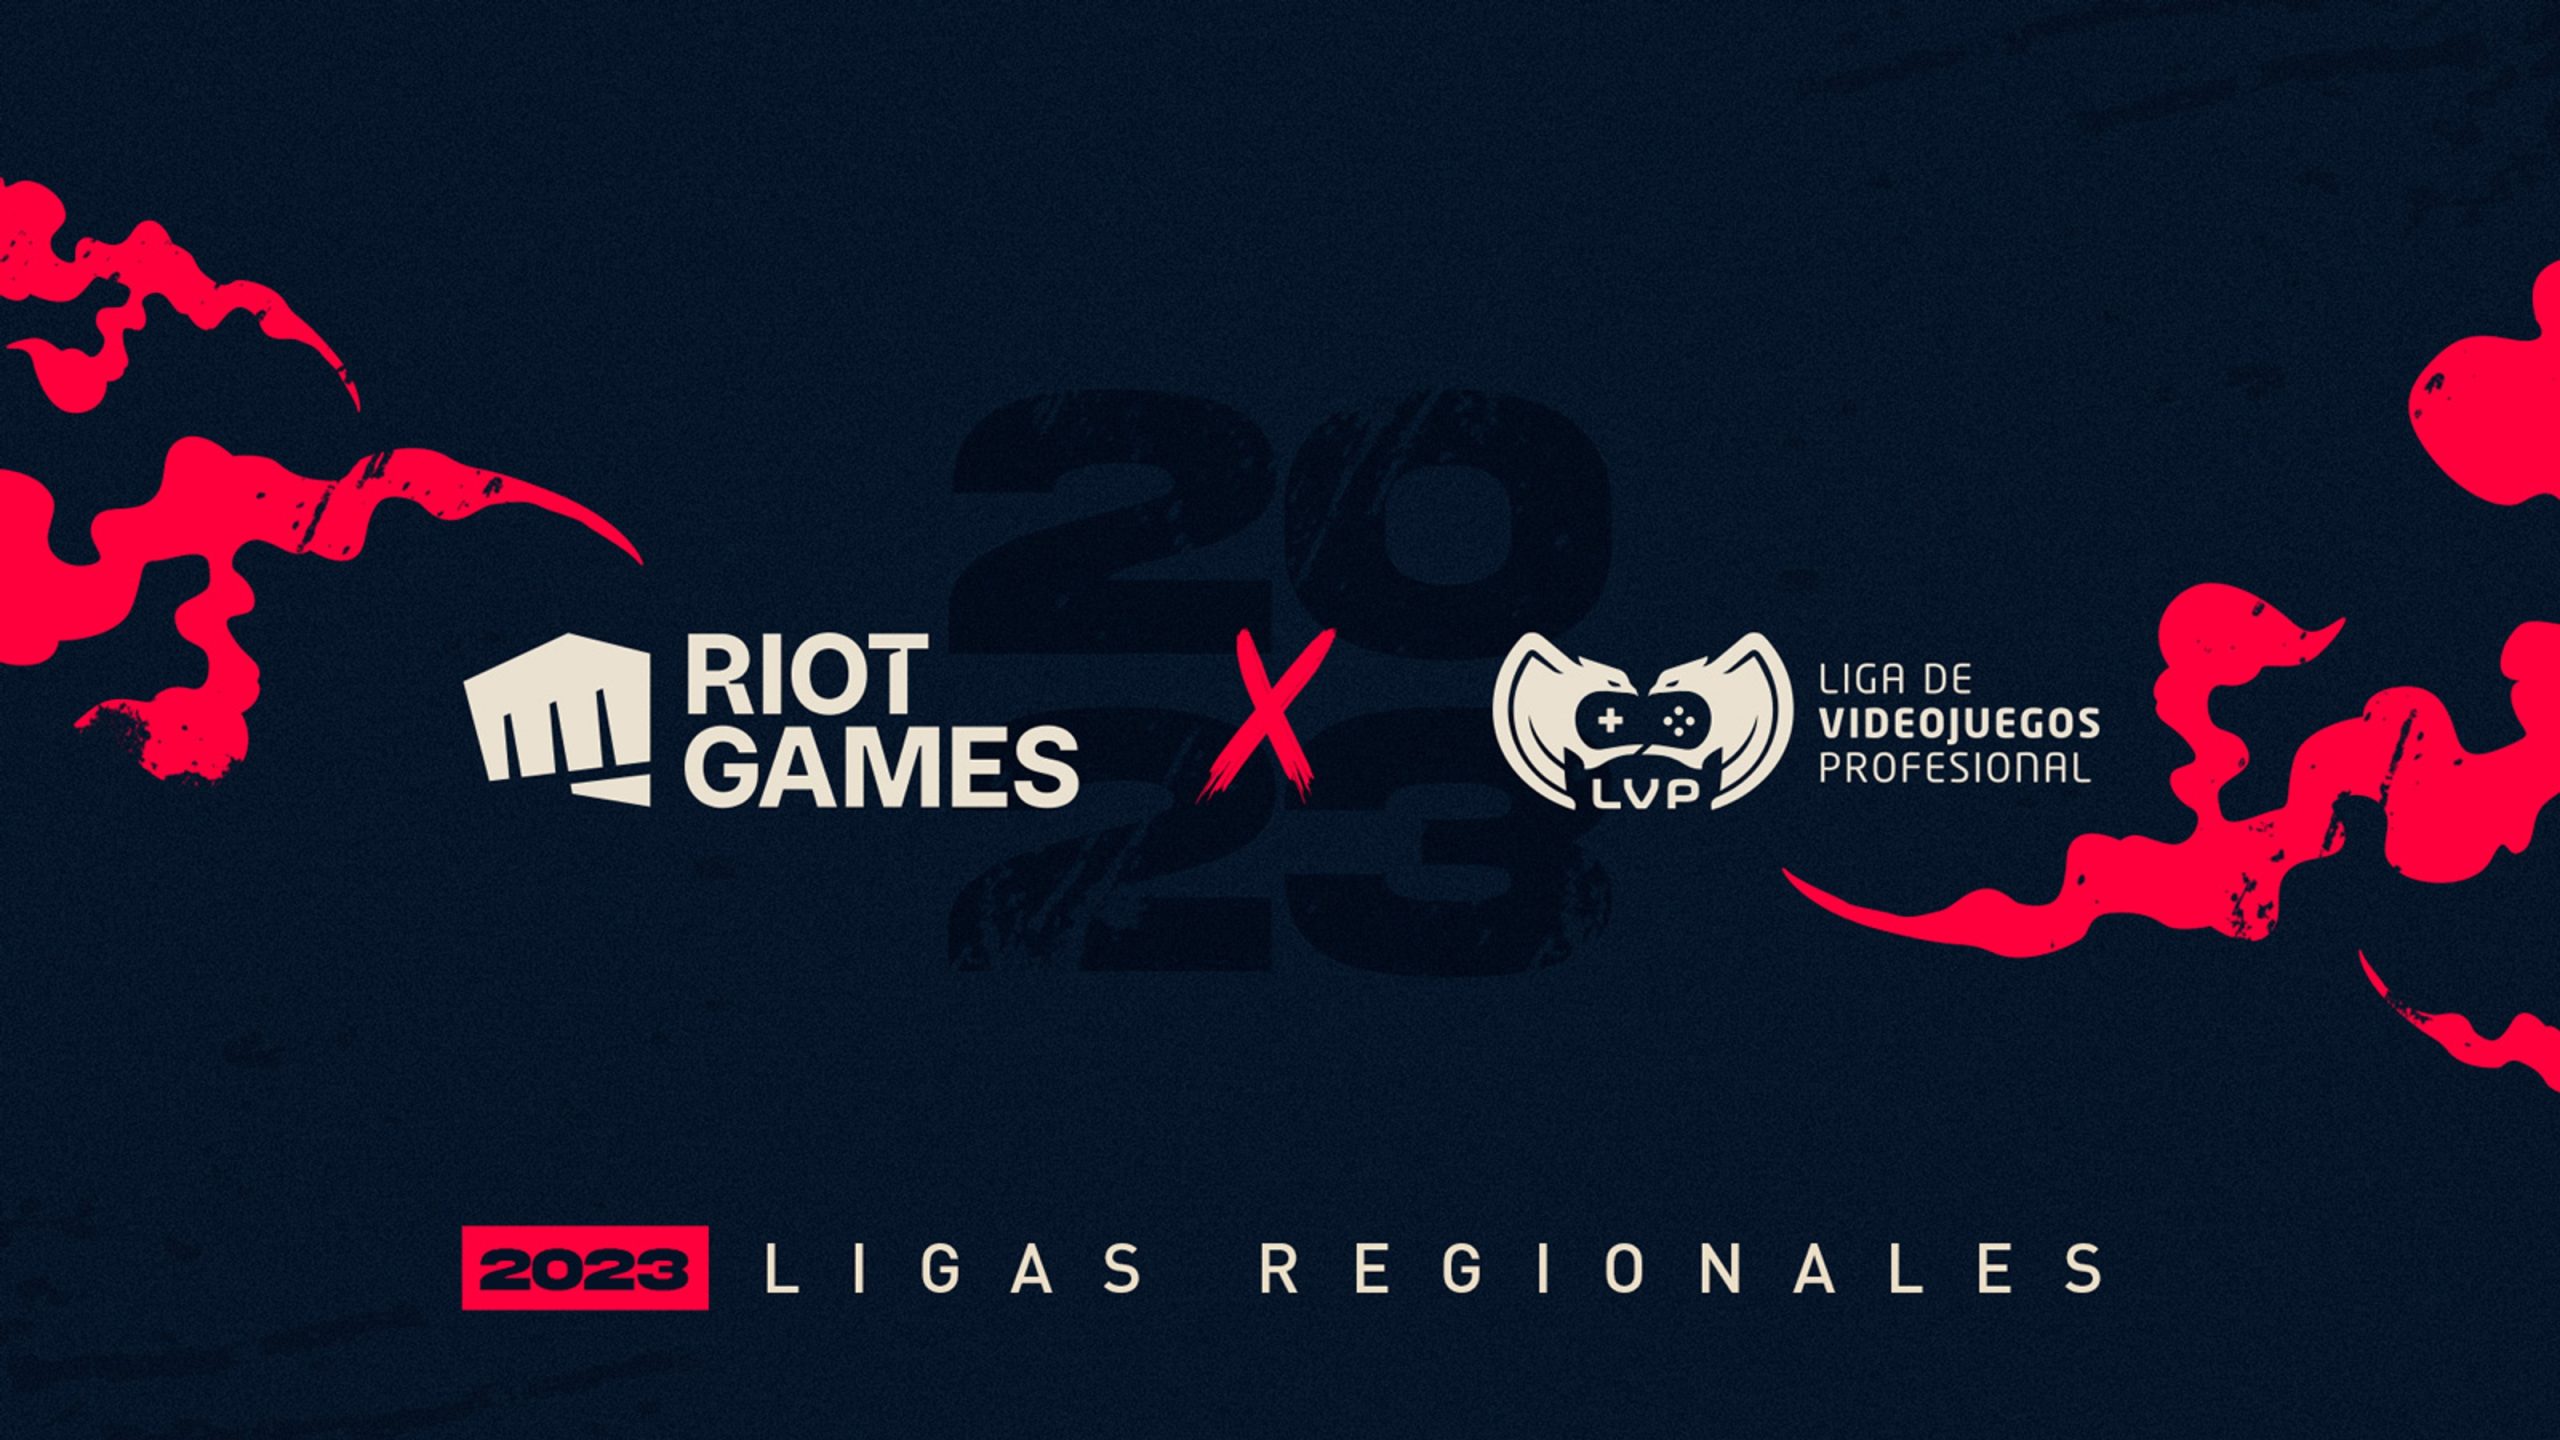 Foto de Riot Games confirma las Ligas Regionales en el 2023 junto a la LVP